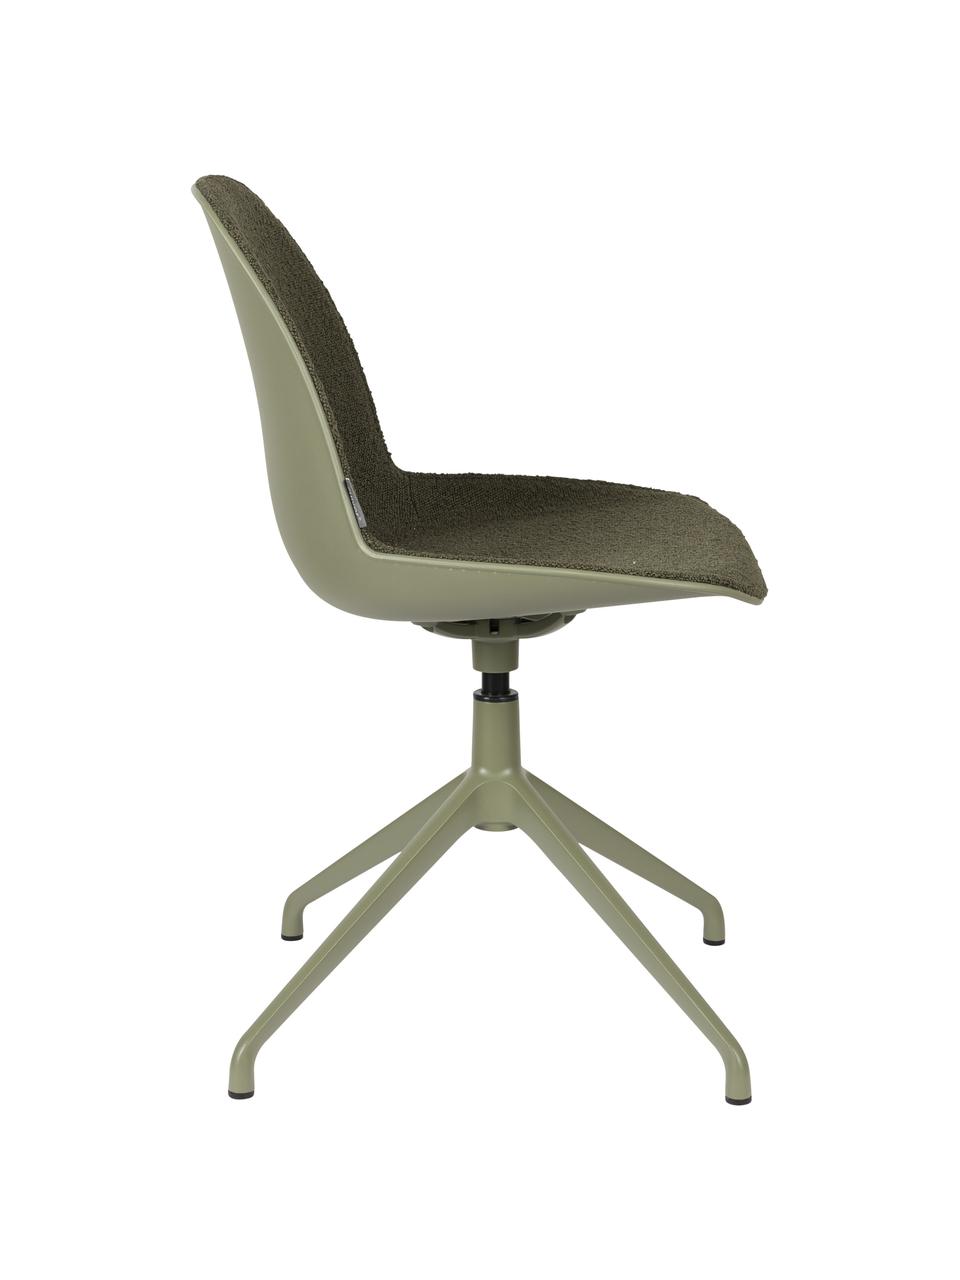 Krzesło biurowe bouclé Albert, Tapicerka: 100% poliester, Stelaż: aluminium powlekane, Szałwiowy zielony bouclé, S 45 x G 52 cm